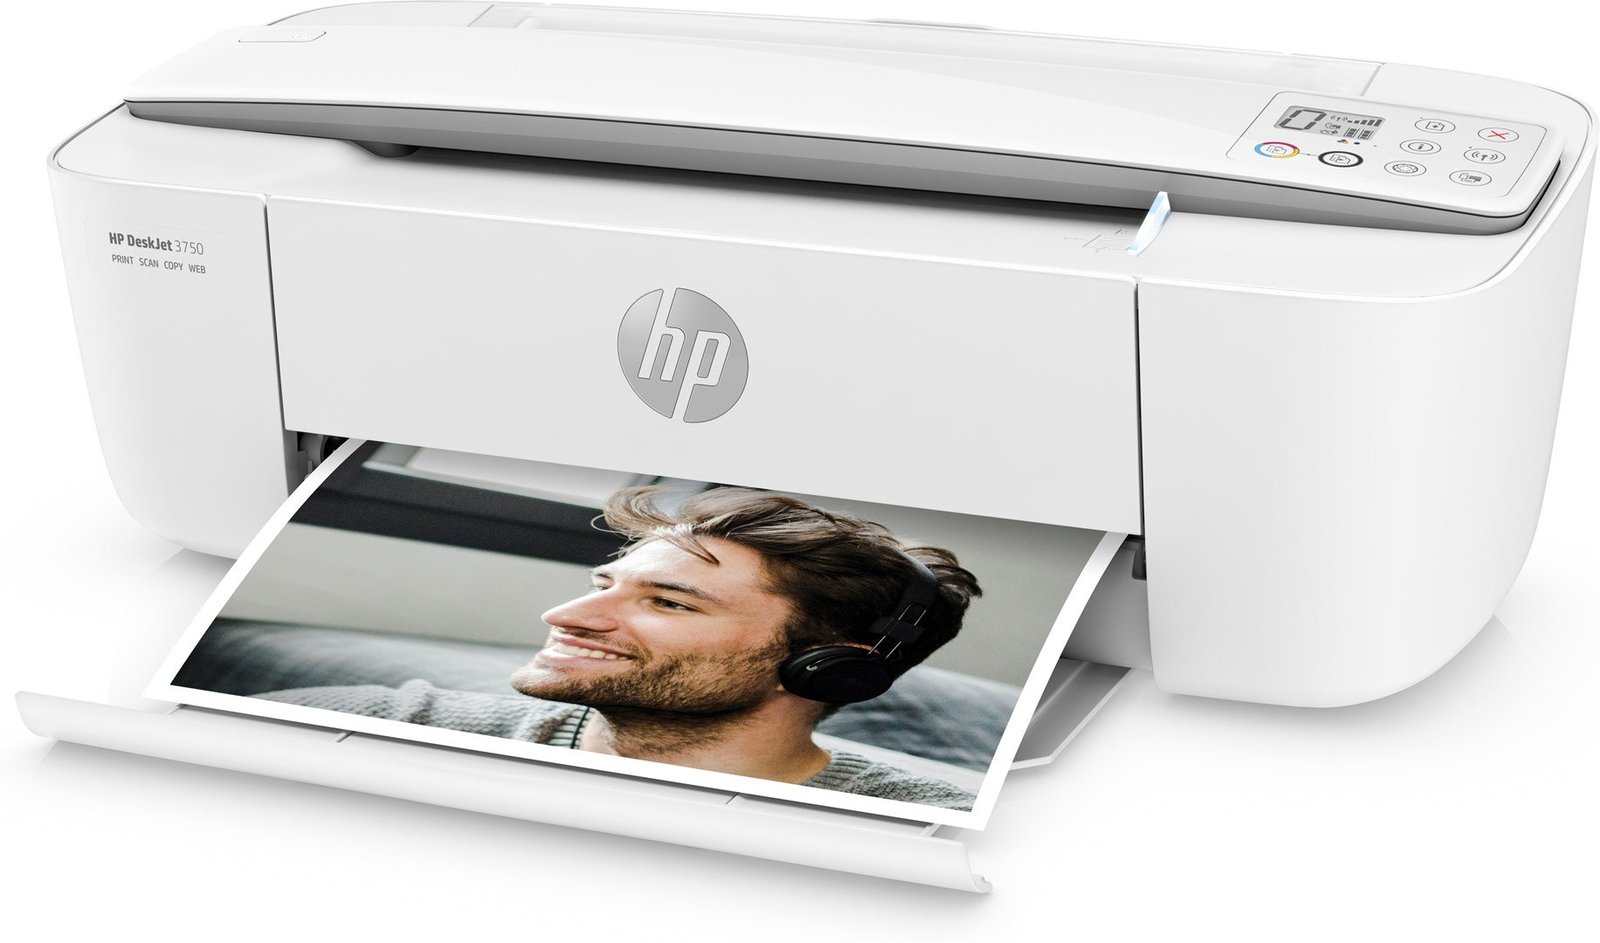 Printer HP DeskJet 3750, i bardhë